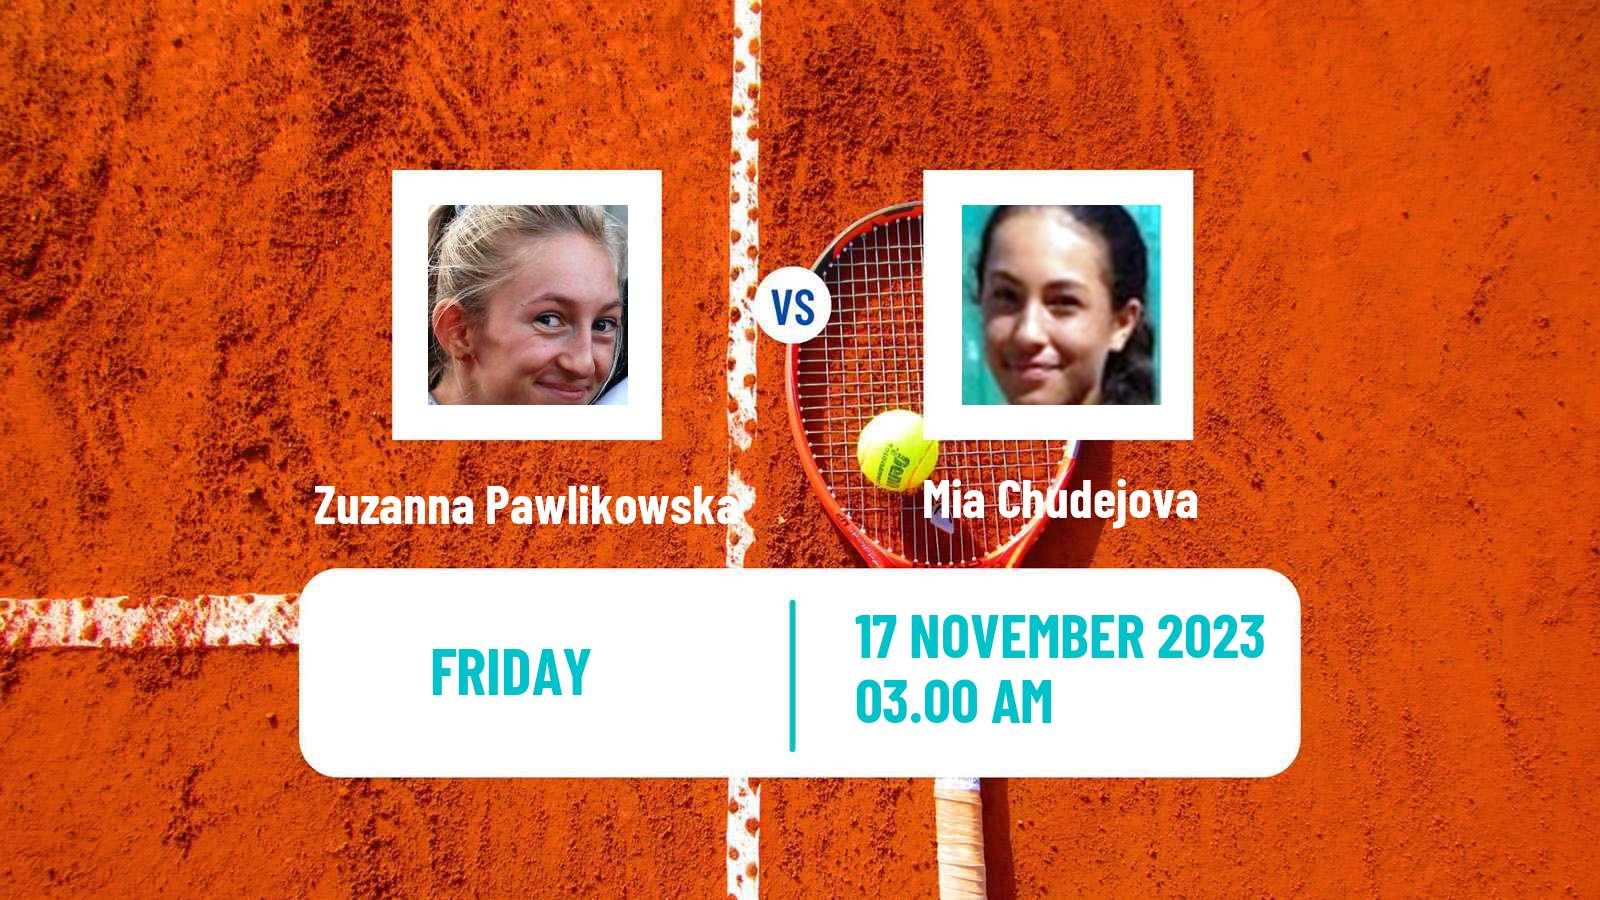 Tennis ITF W15 Sharm Elsheikh 18 Women Zuzanna Pawlikowska - Mia Chudejova